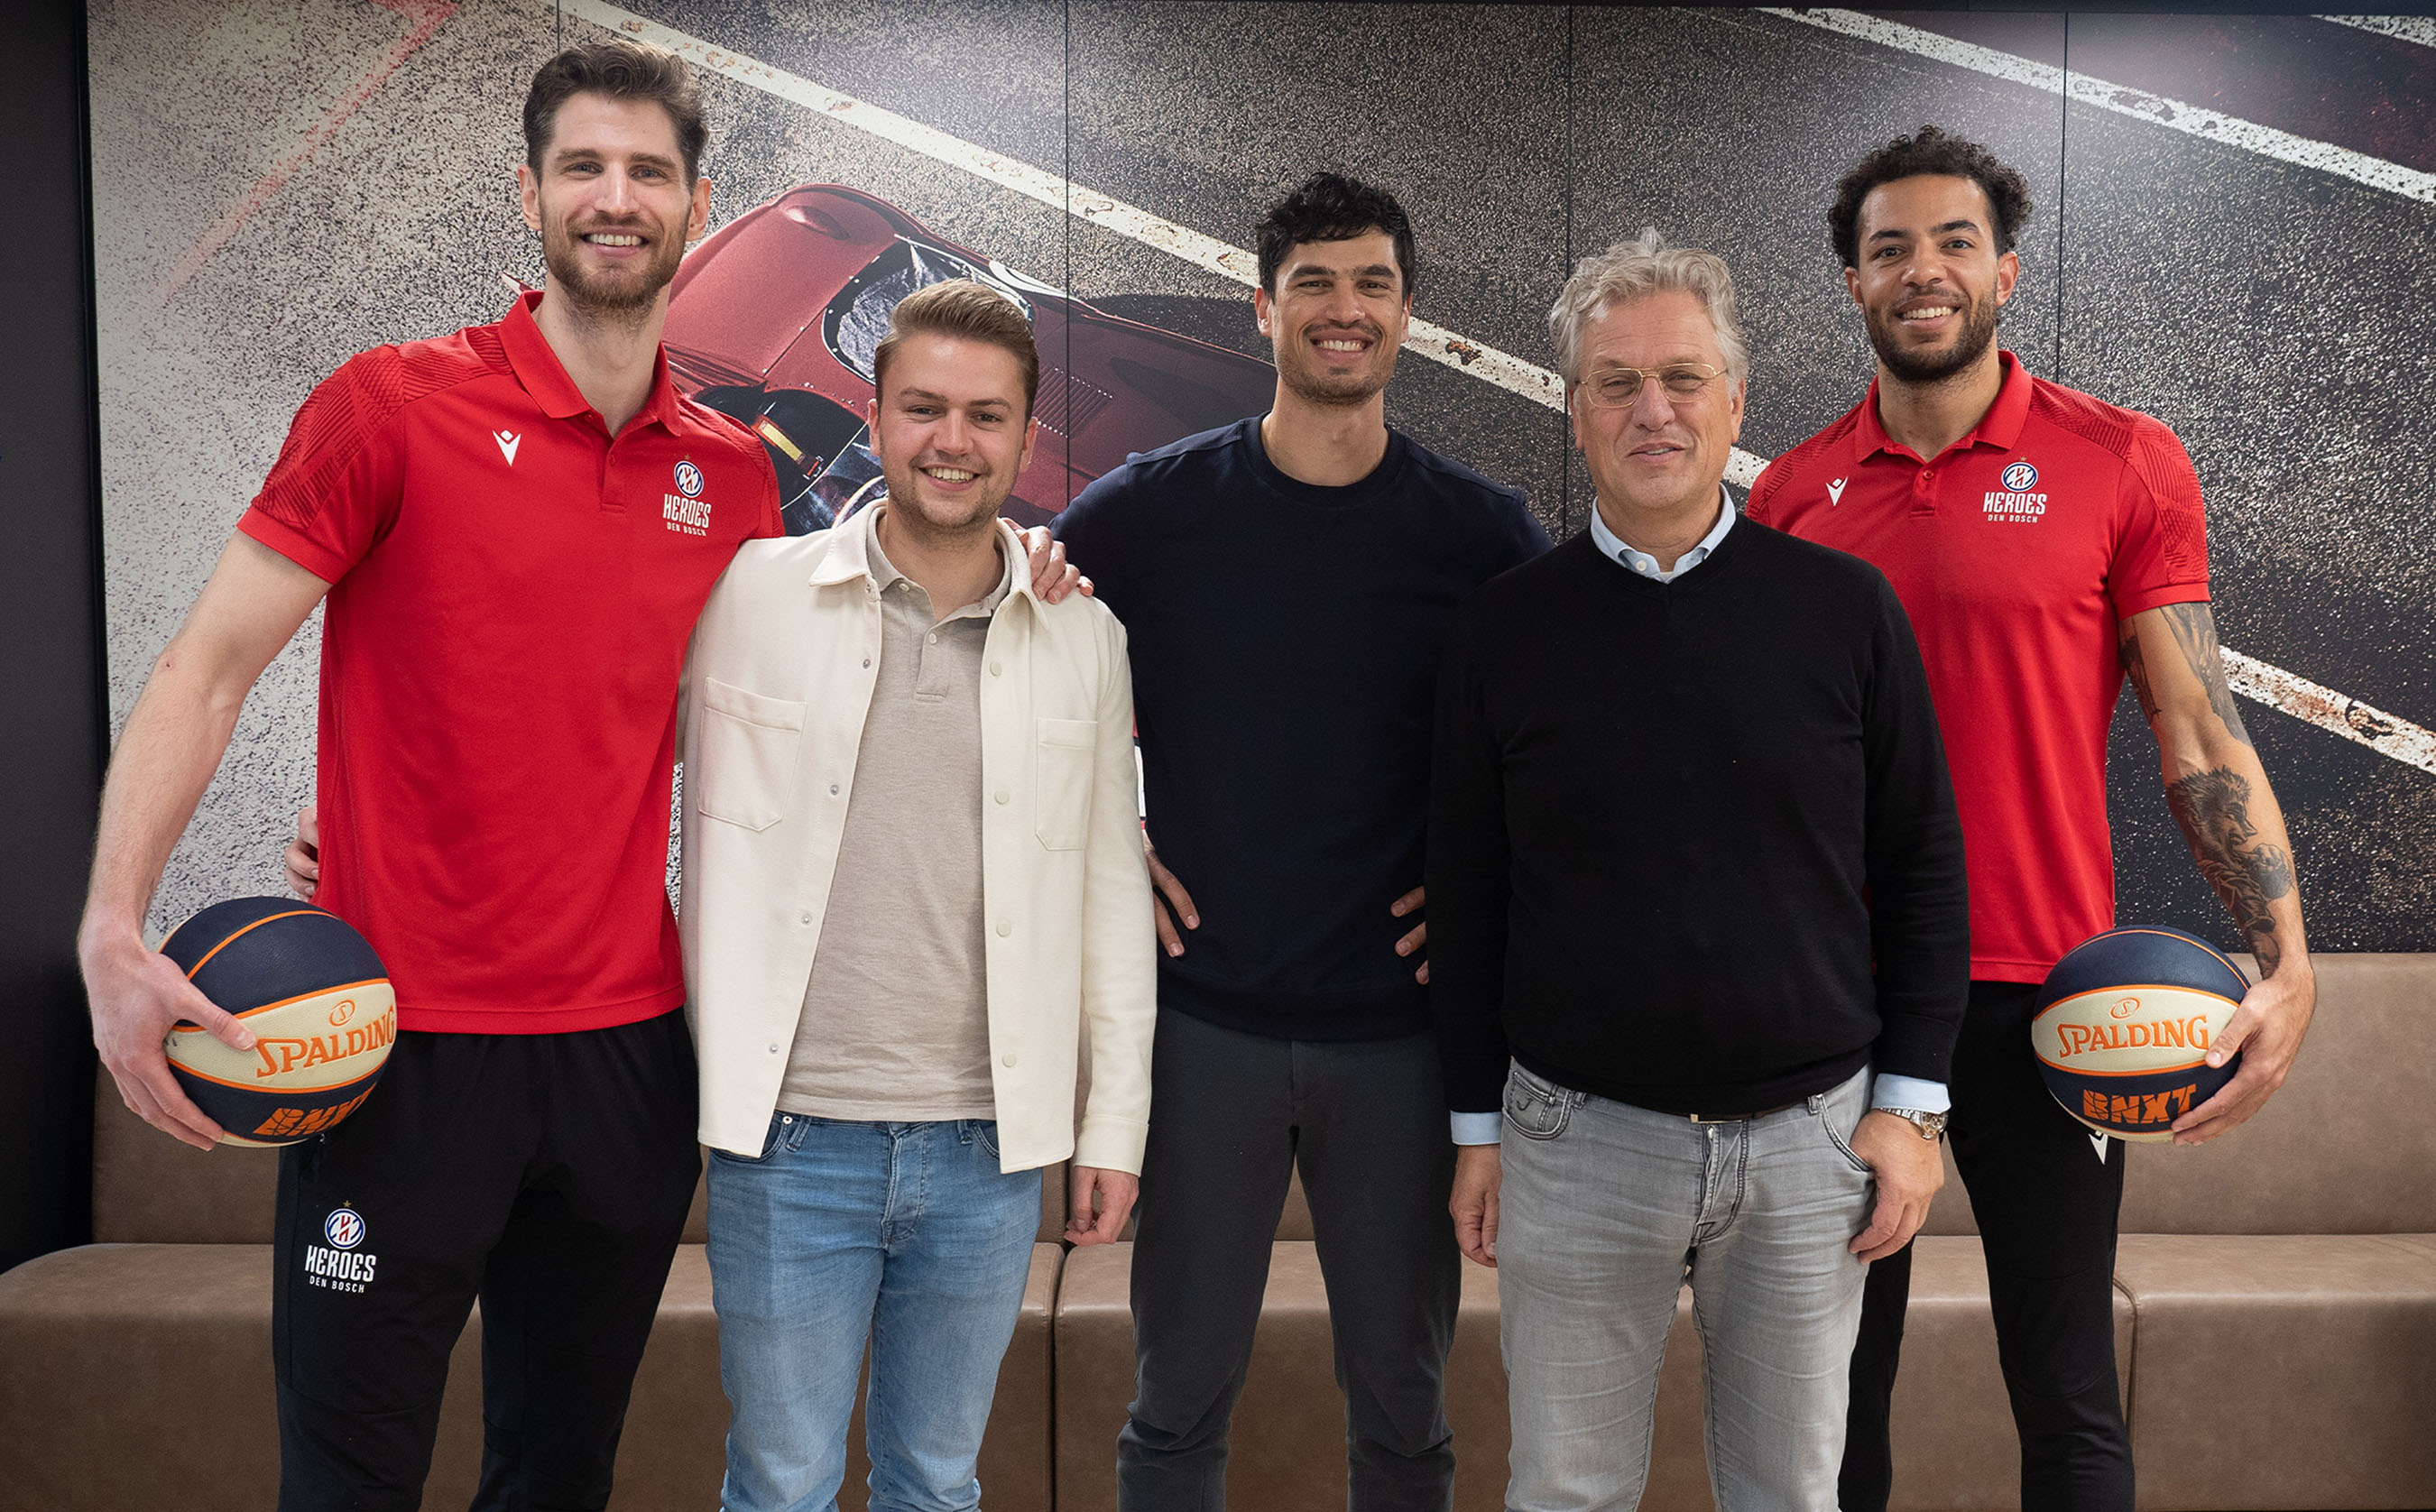 Heroes Den Bosch op bezoek bij Capital Sports voor ondertekenen partnership